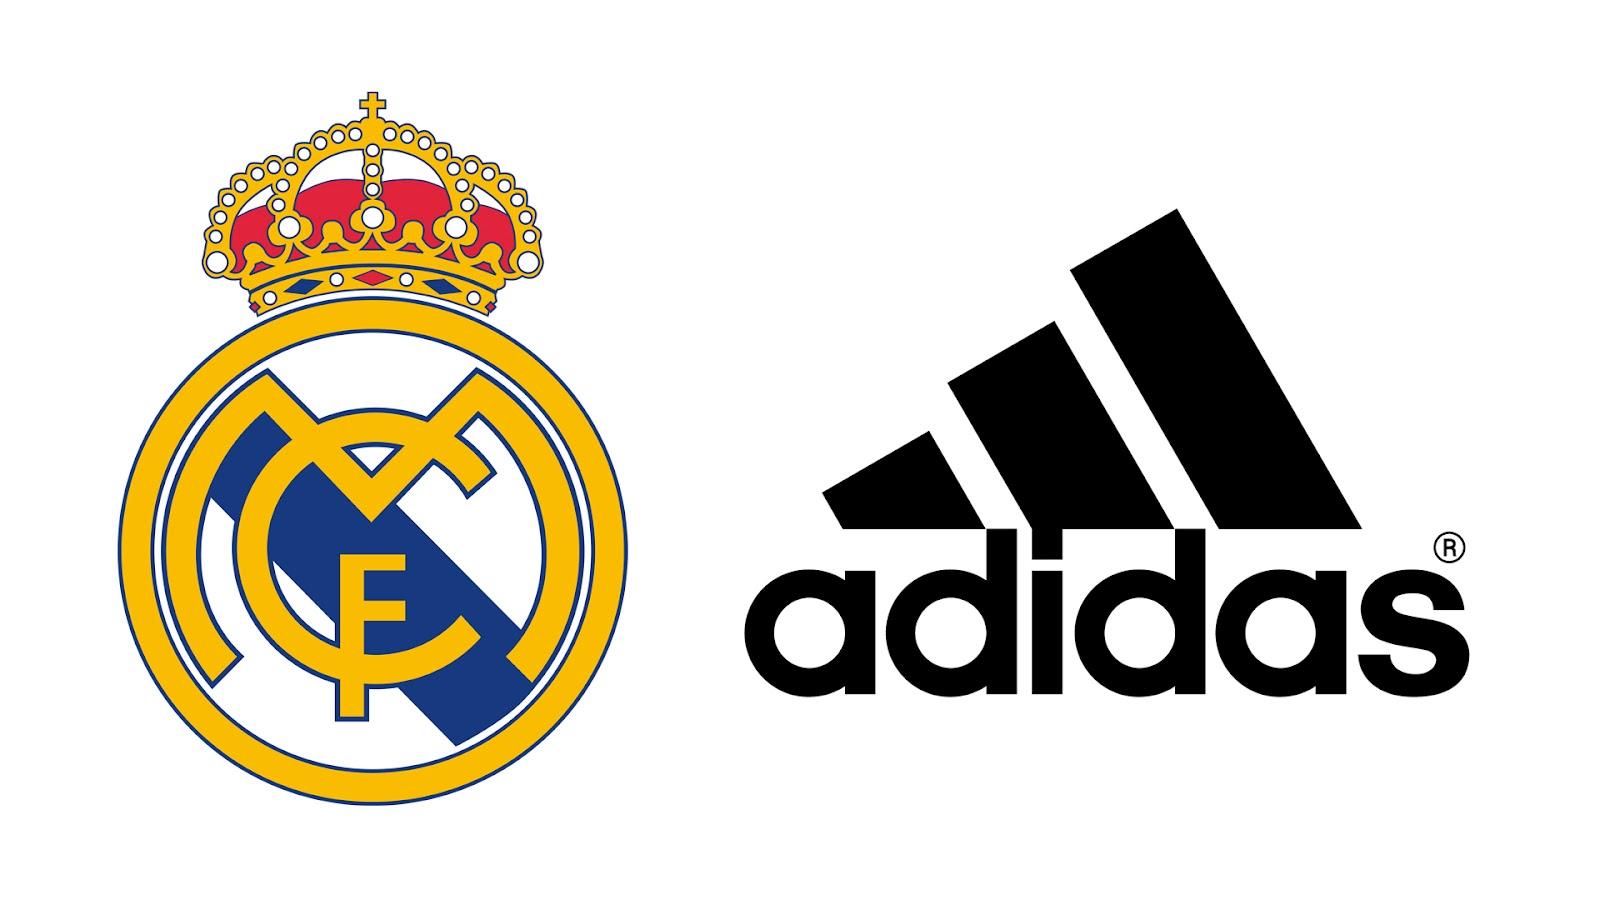 Adidas Real Madrid 2018 Logo - Real Madrid Adidas World Record Shirt Deal